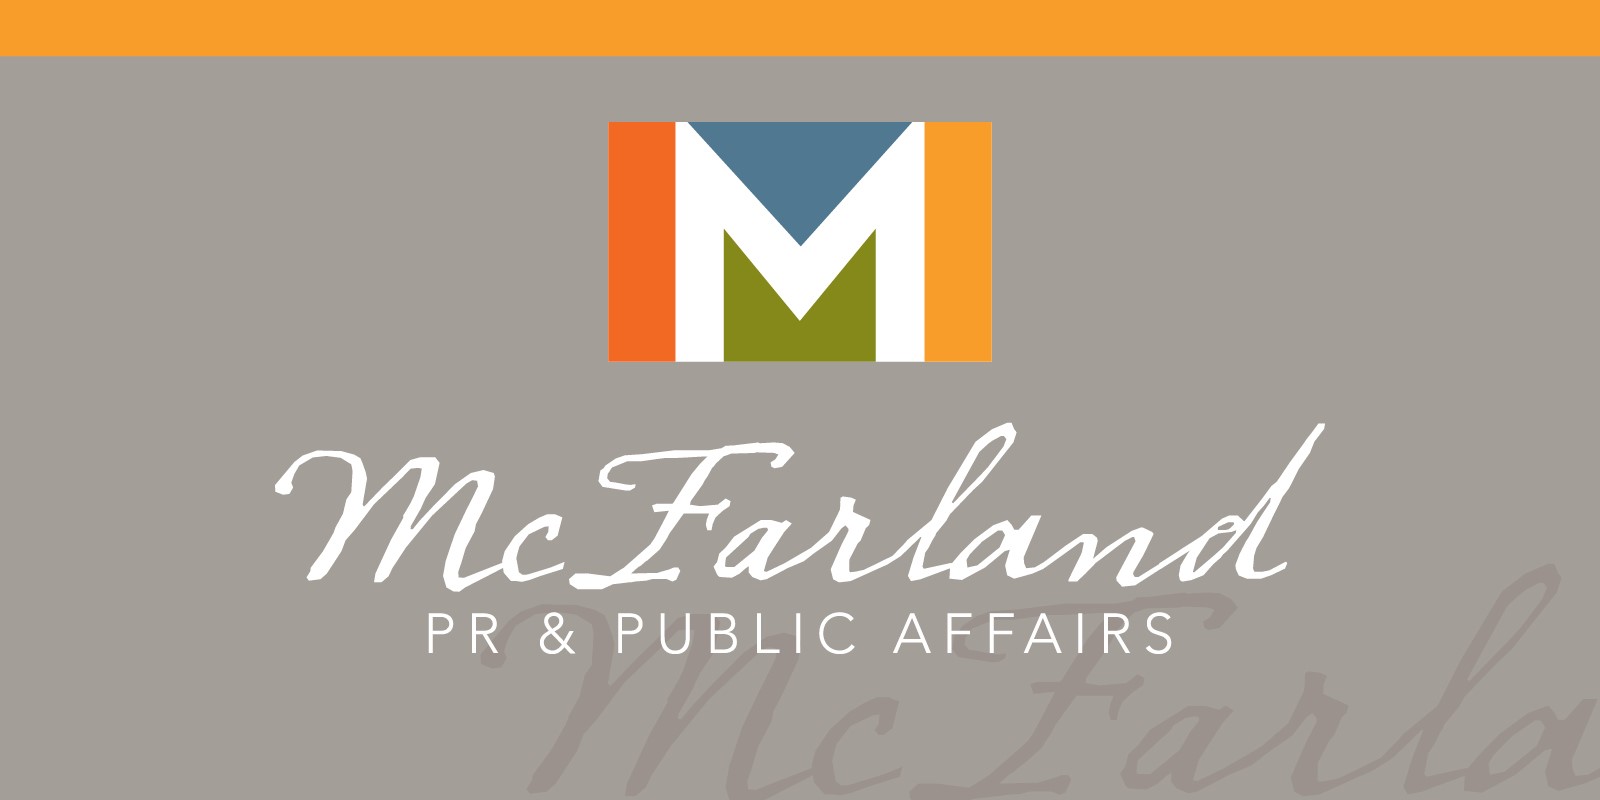 McFarland PR & Public Affairs Logo